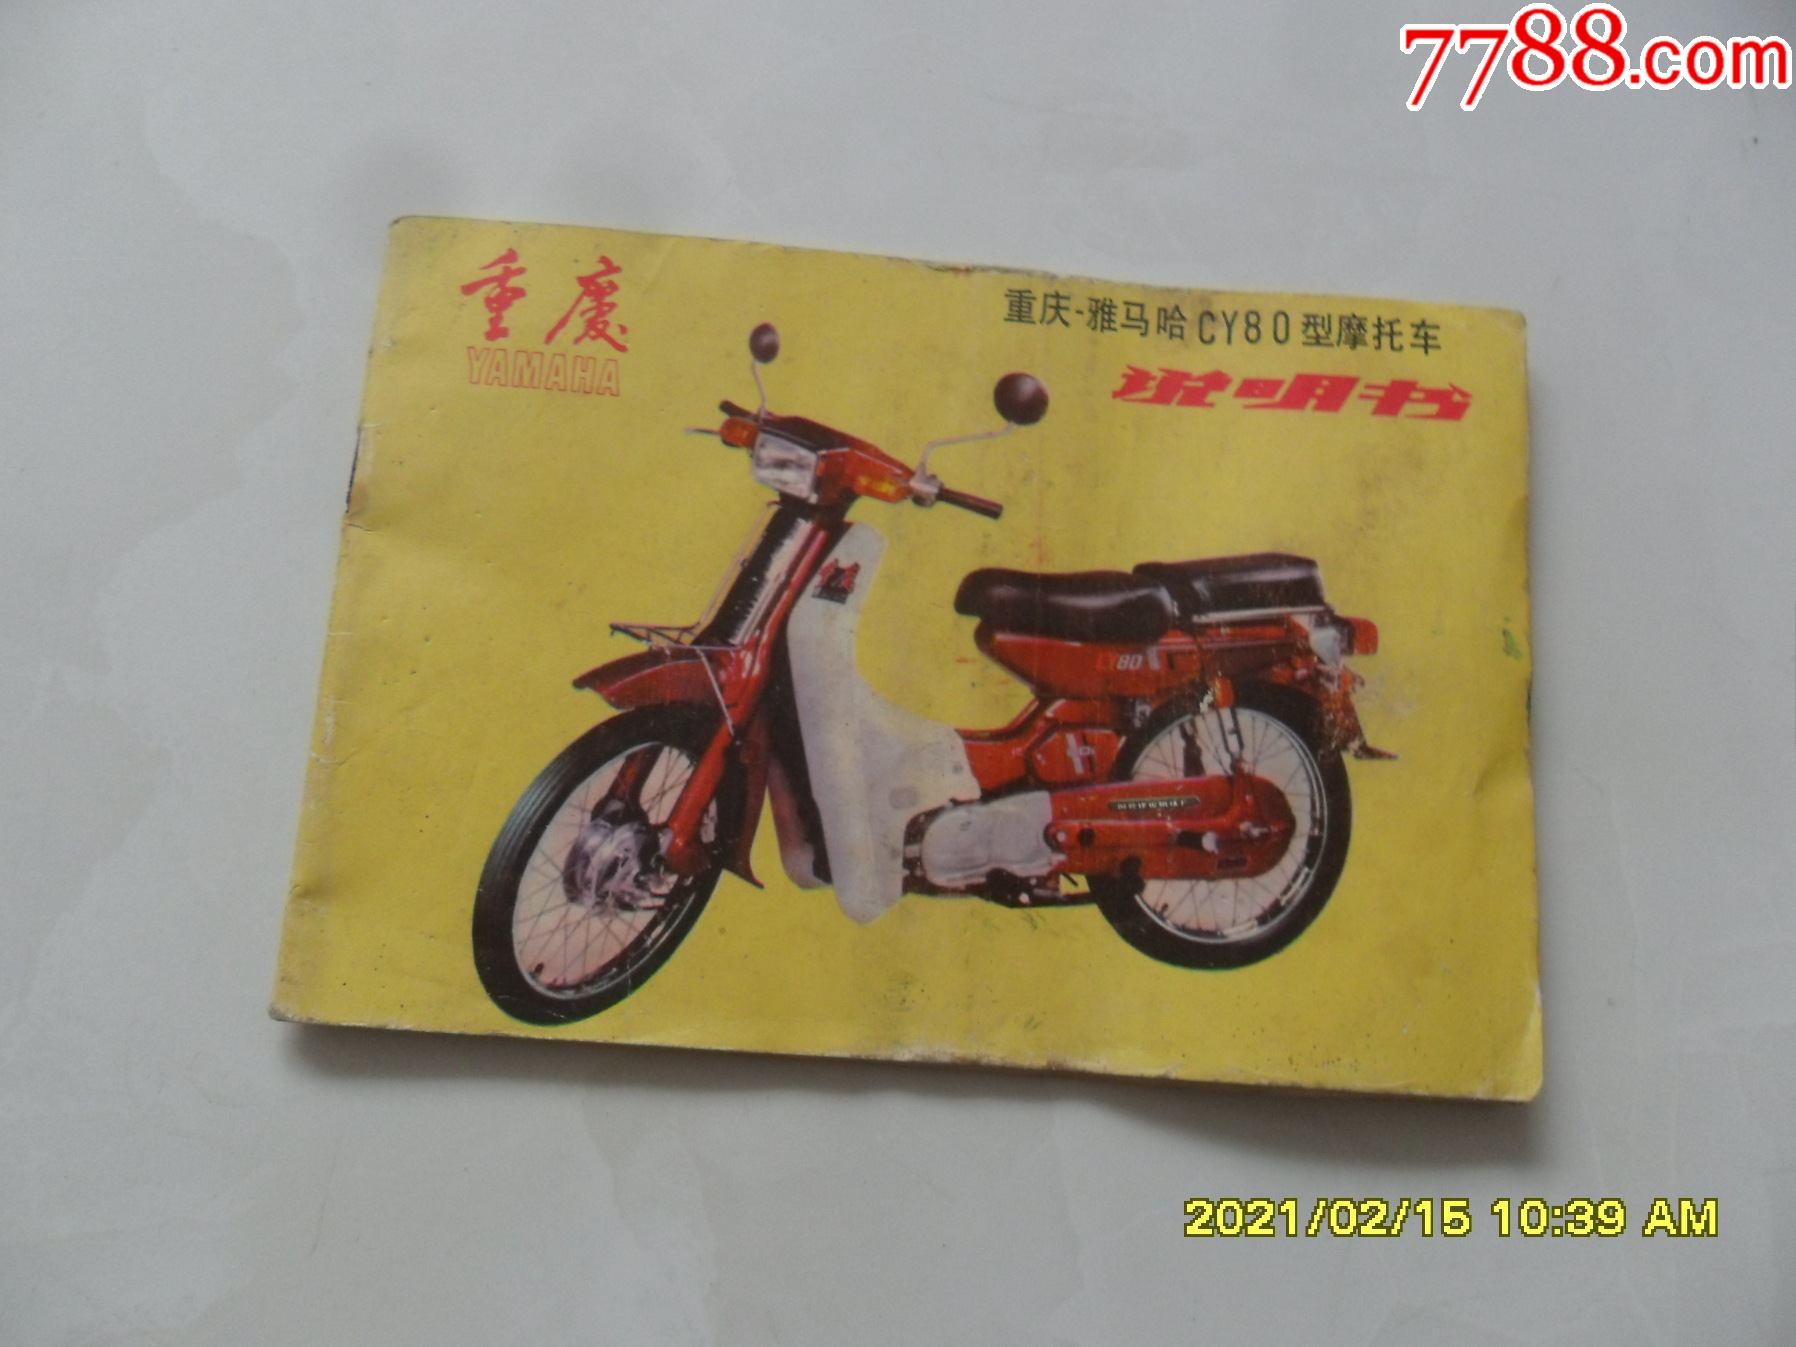 重庆—雅马哈cy80型摩托车(摩托车图谱老资料)